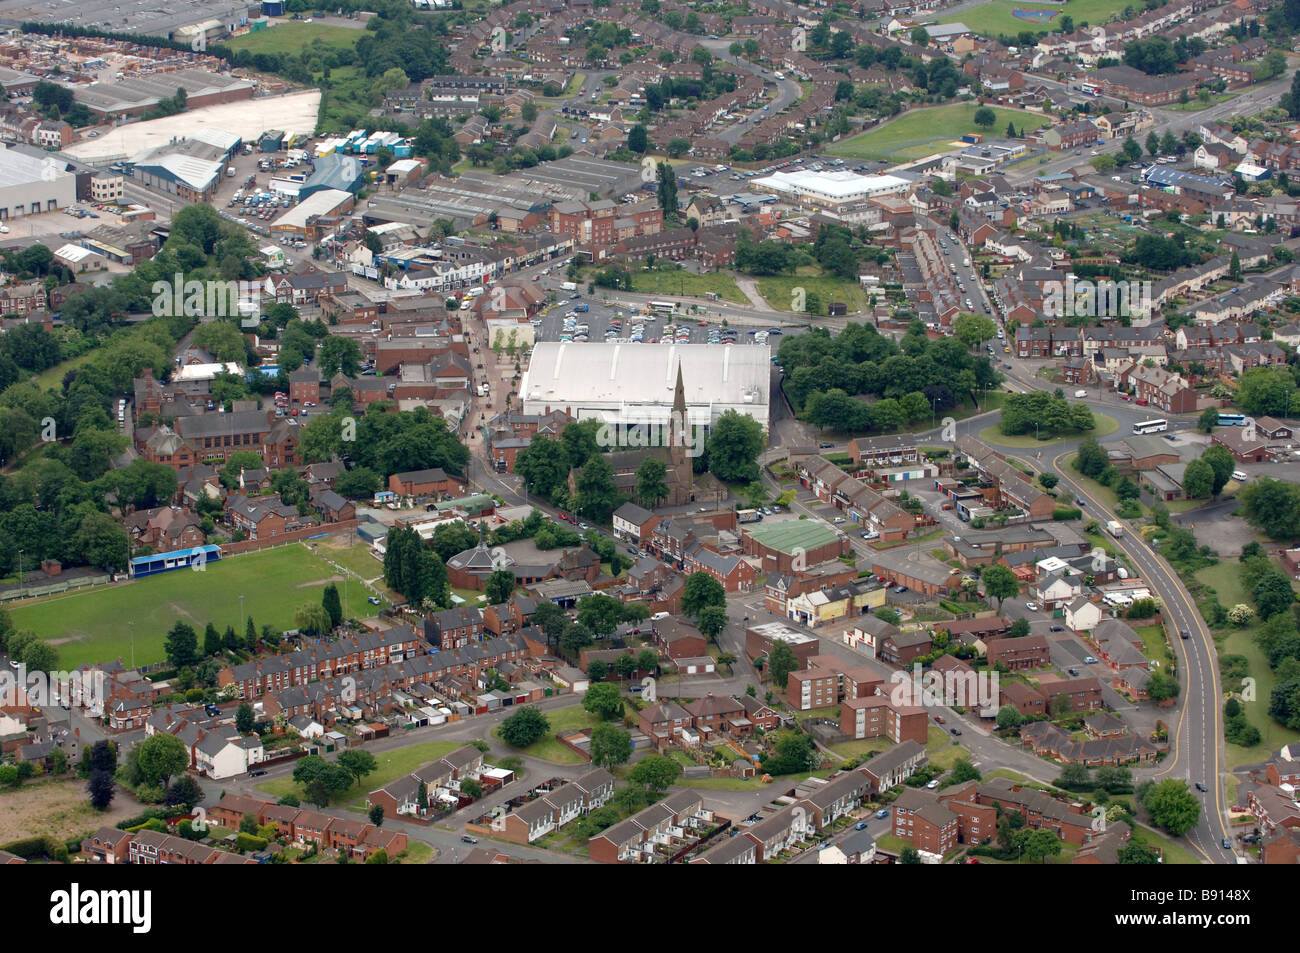 Luftaufnahme des Darlaston Wednesbury West Midlands England UK zeigt Asda Supermarkt und St.-Lorenz-Kirche Stockfoto